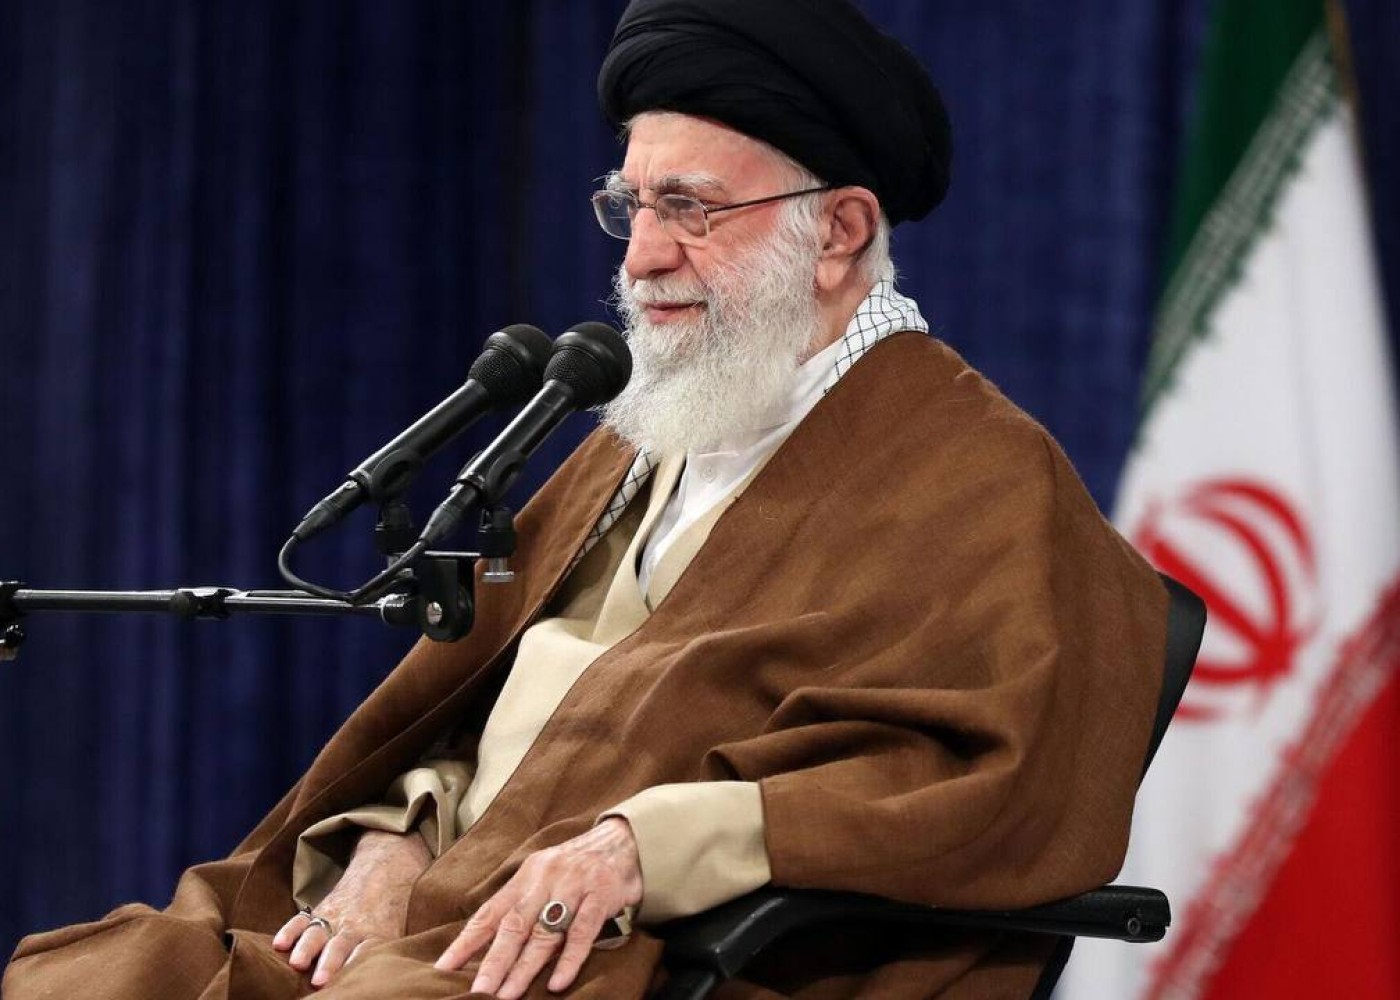 İranın dini lideri Rəisinin cənazəsi üzərindədua oxuyacaq